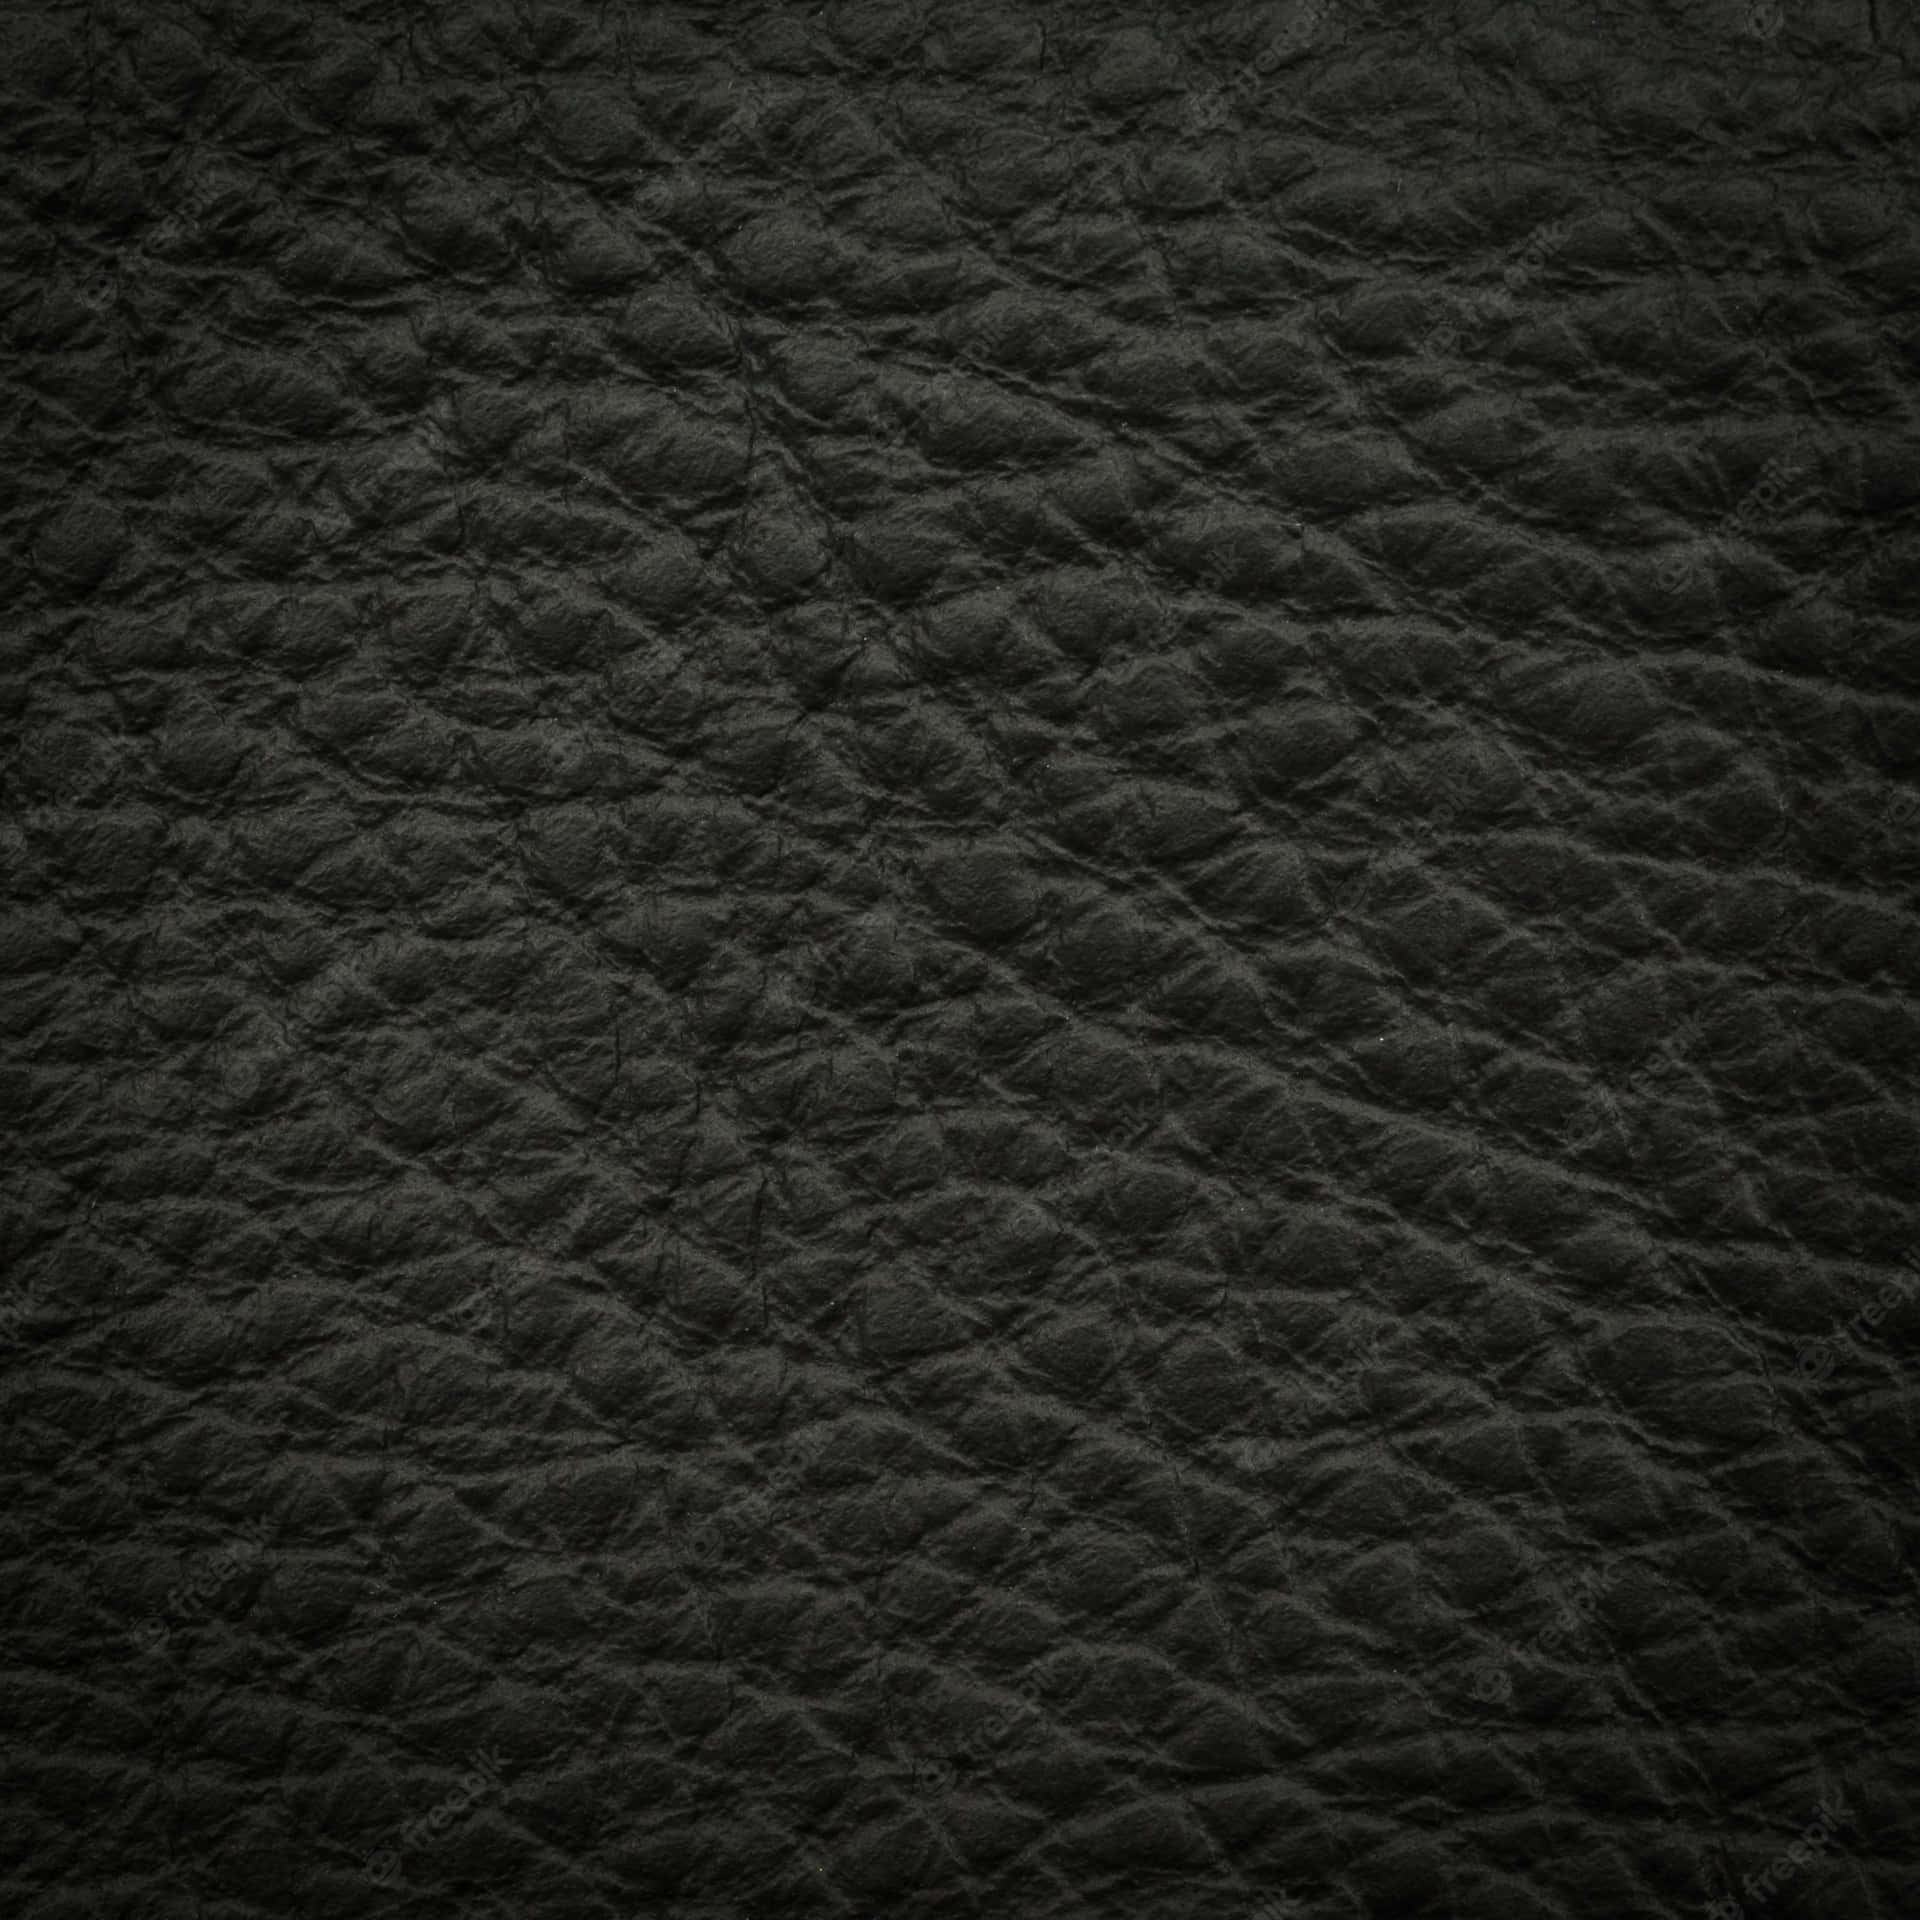 Polsk sort læder afspejler luksus og elegance. Wallpaper